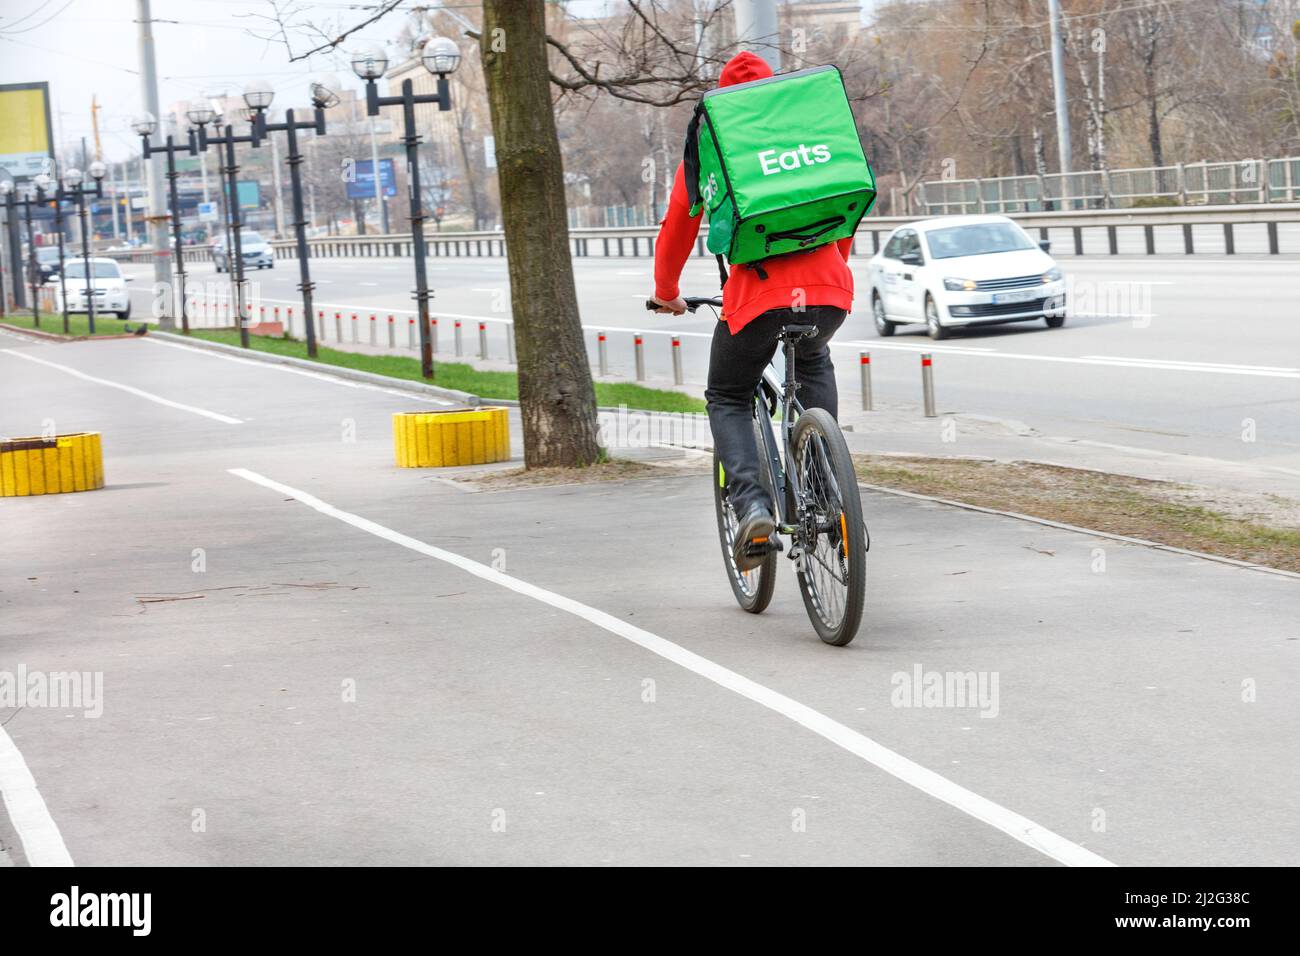 Corriere con uno zaino verde isotermico sulla schiena su una bici per la consegna di cibo in una strada della città. Foto Stock